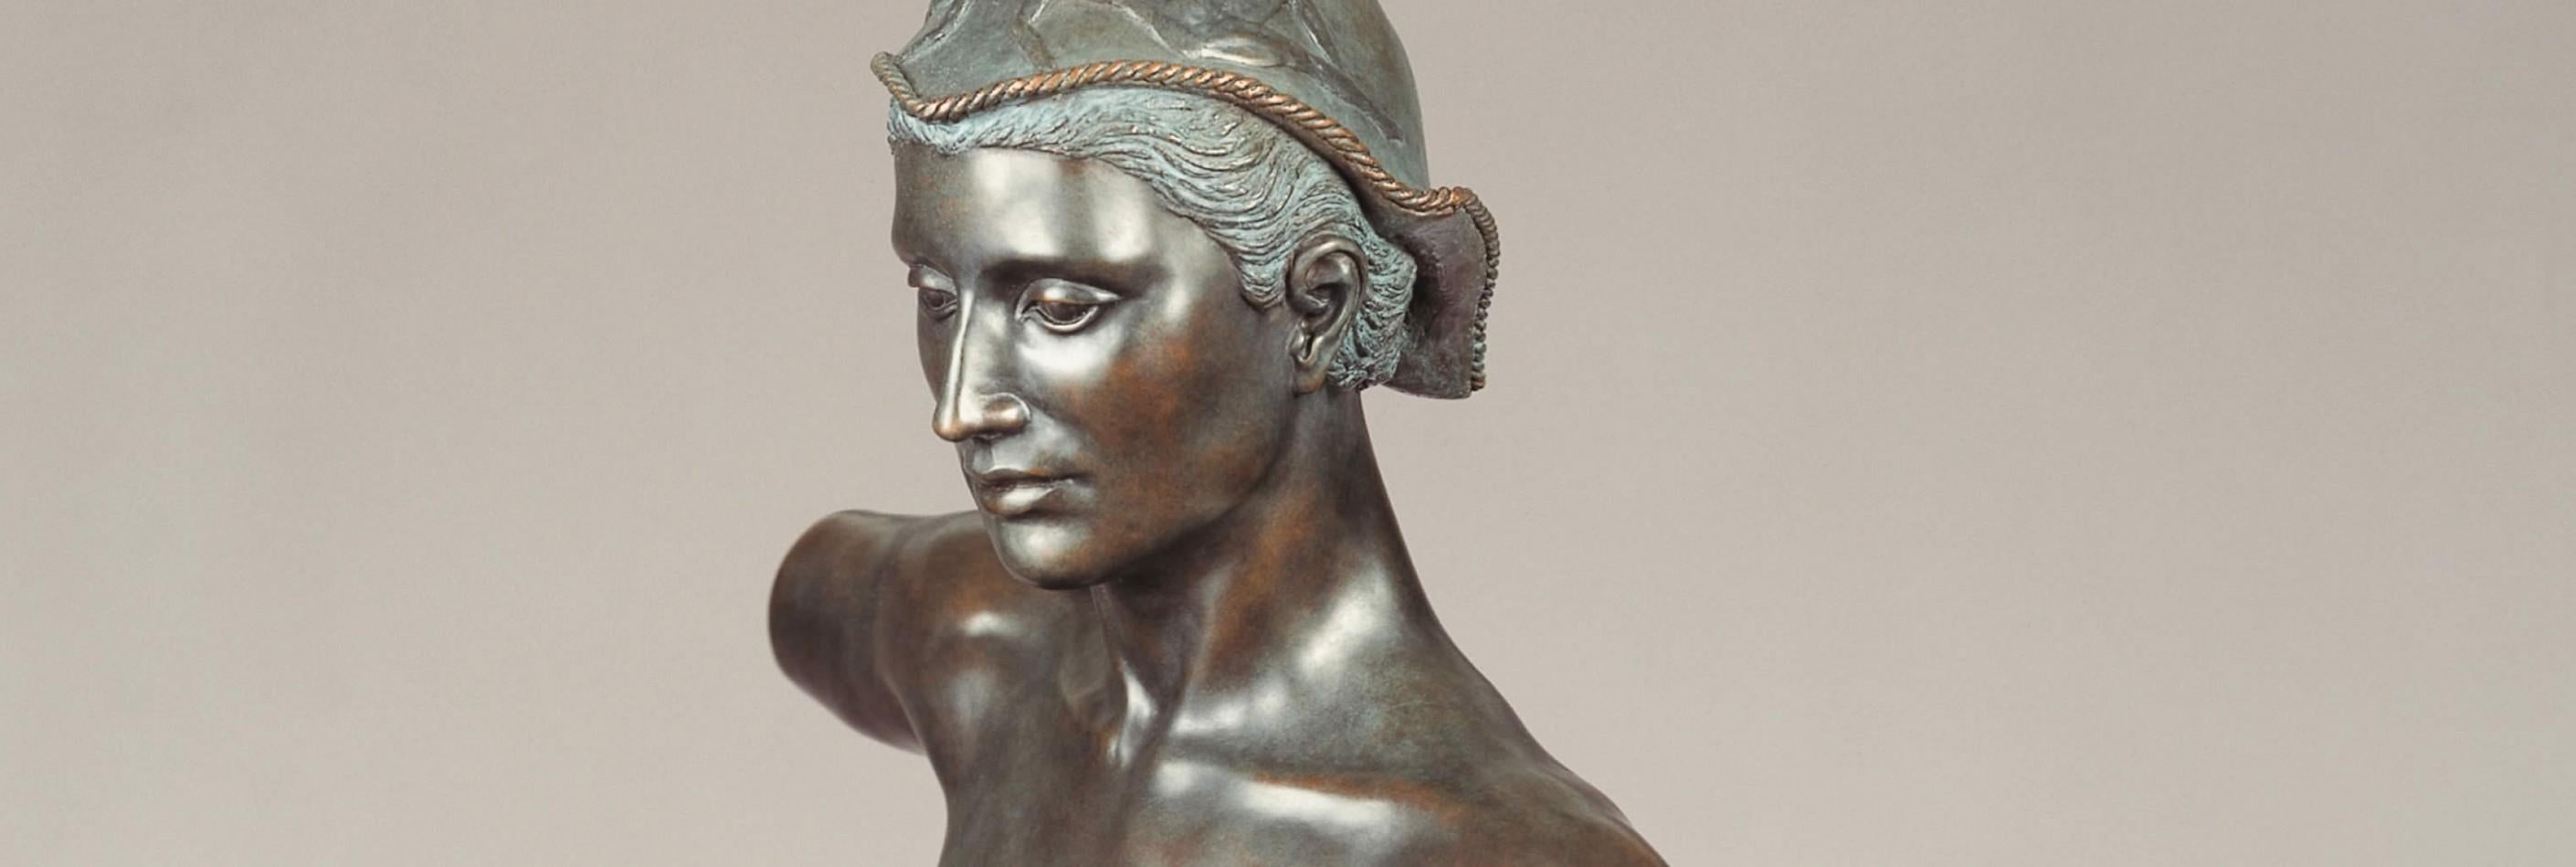 Was Bleibet Aber Stiften die Dichter Bronzeskulptur Klassisches Zeitgenössisches Gedicht

Die Skulpturen von Margot Homan (1956, Oss, Niederlande) zeigen eine perfekte Beherrschung des alten Handwerks des Modellierens und Bildhauens, mit dem sie